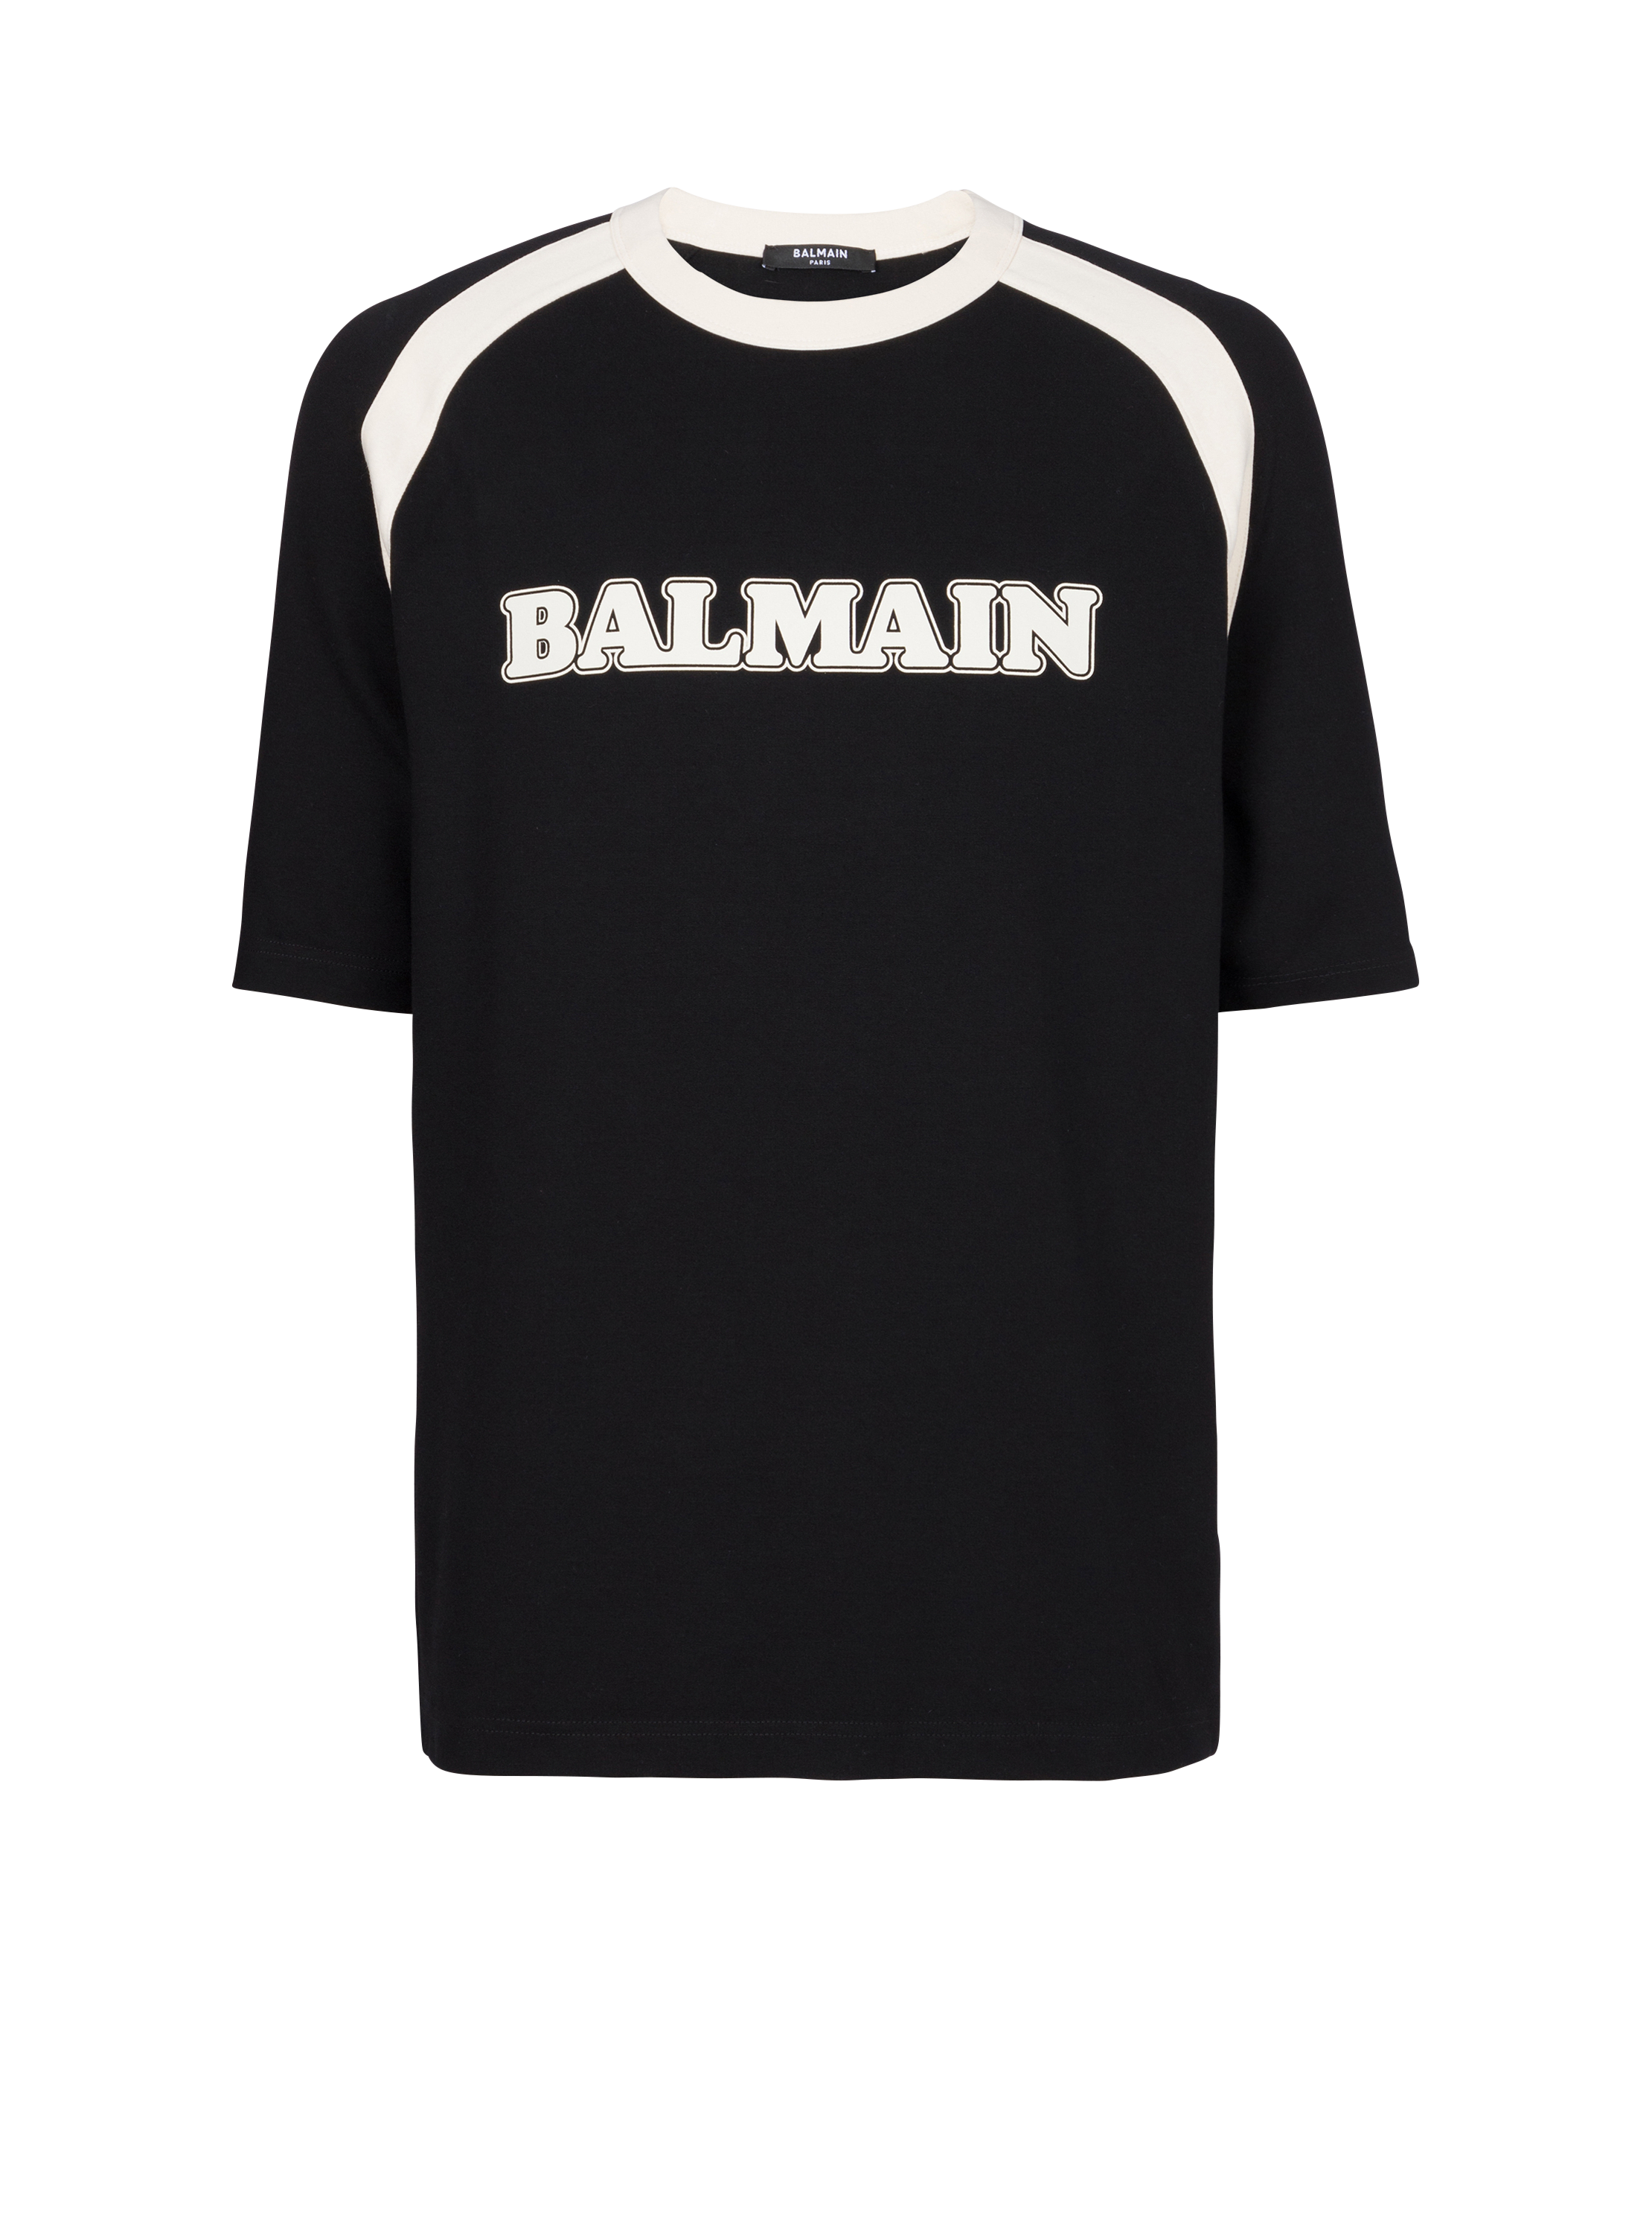 Retro Balmain T-shirt, schwarz, hi-res